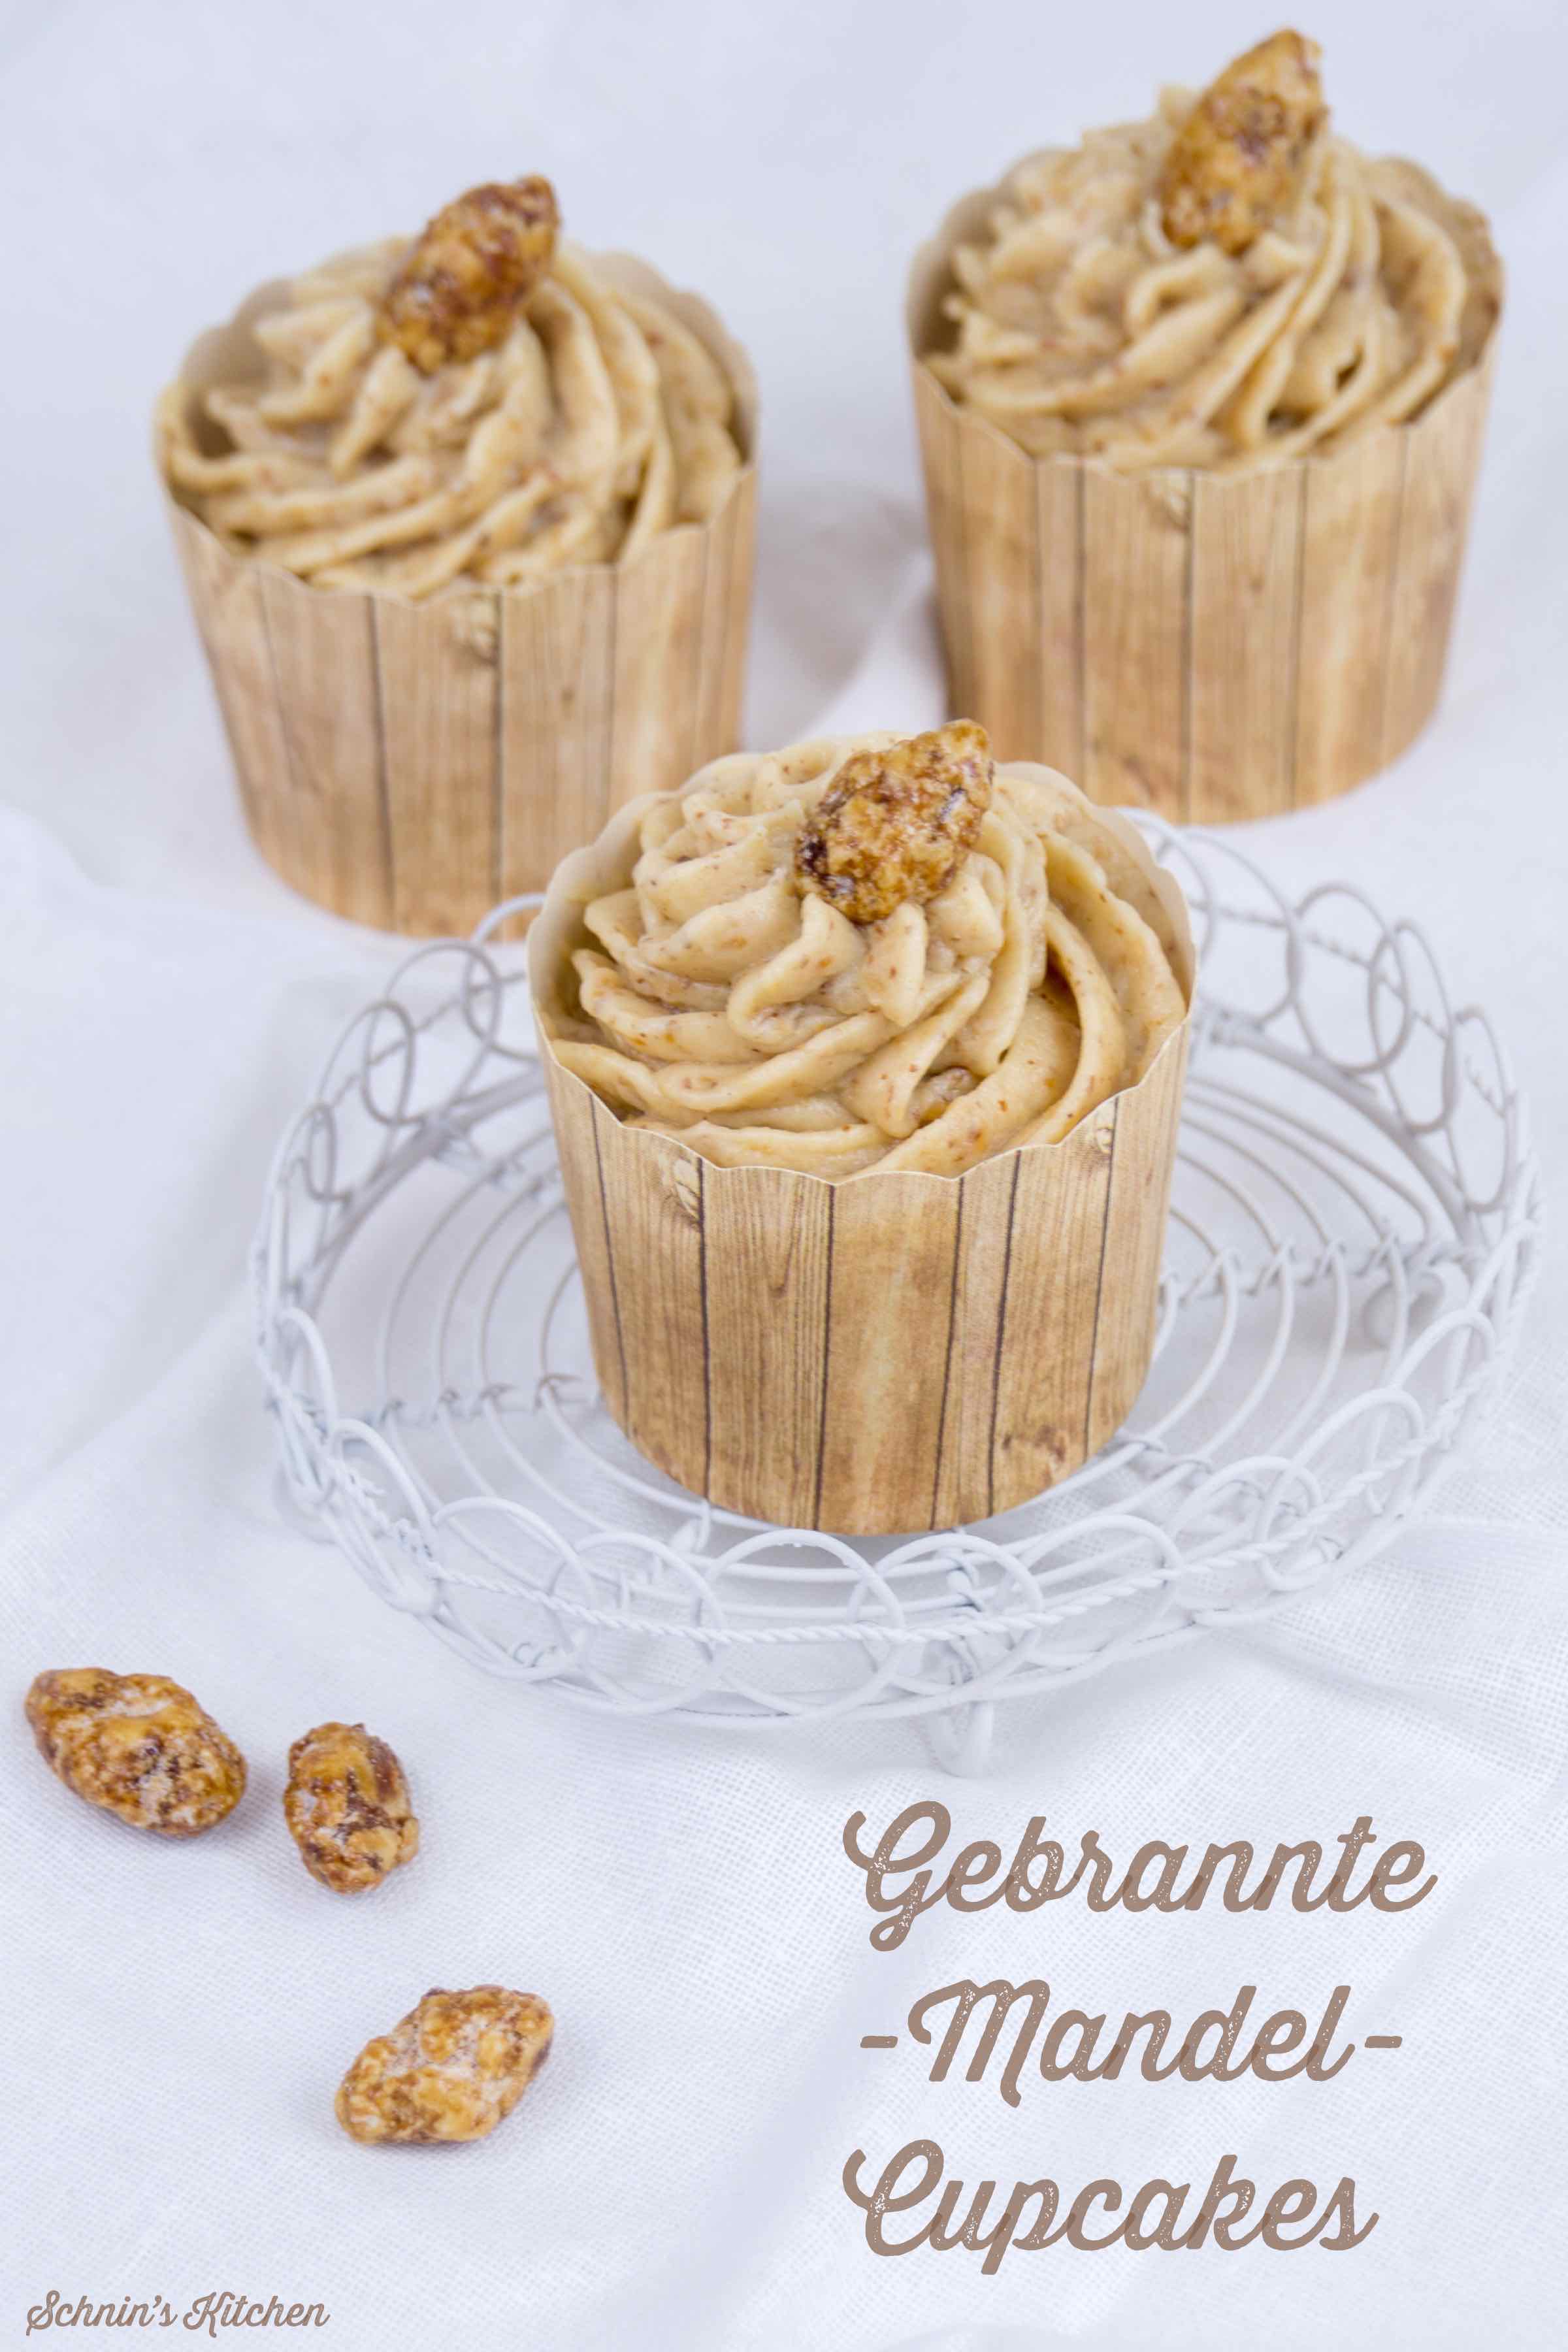 Gebrannte-Mandel-Cupcakes zur Adventsschlemmerei | www.schninskitchen.de